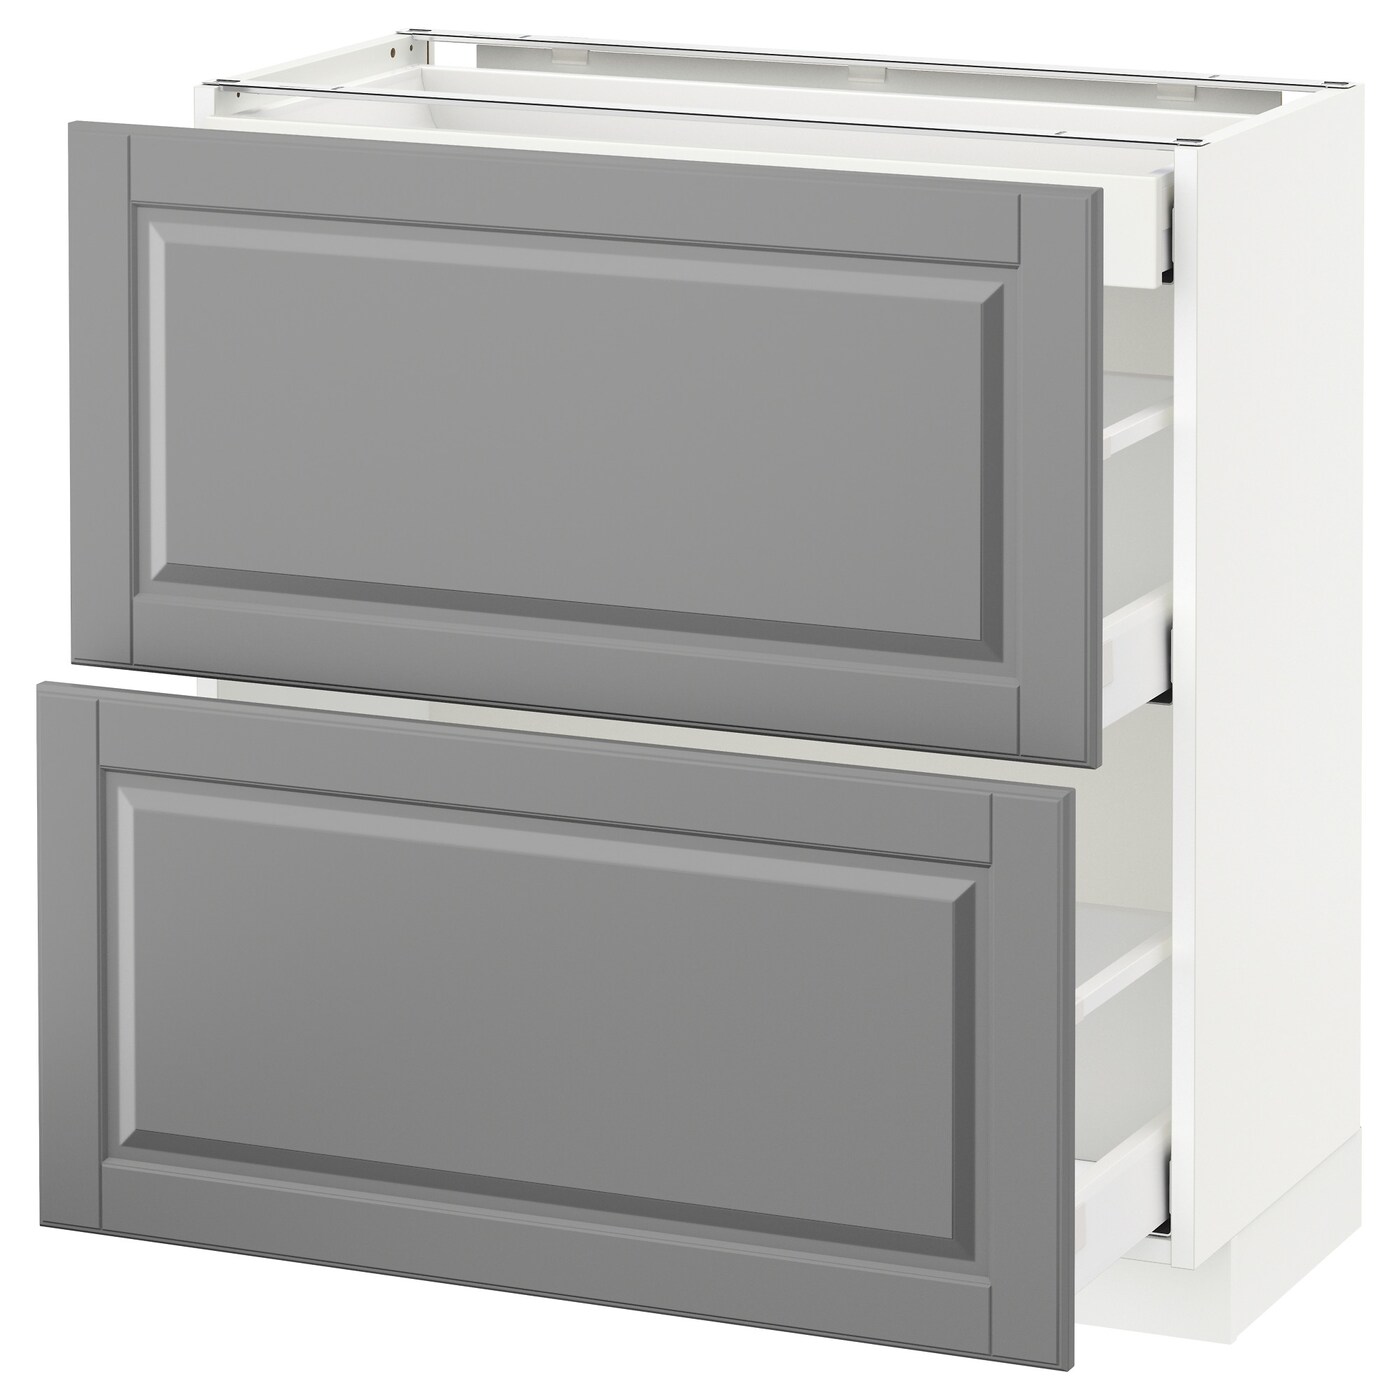 Напольный кухонный шкаф  - IKEA METOD MAXIMERA, 80x39,5x80см, белый/серый, МЕТОД МАКСИМЕРА ИКЕА